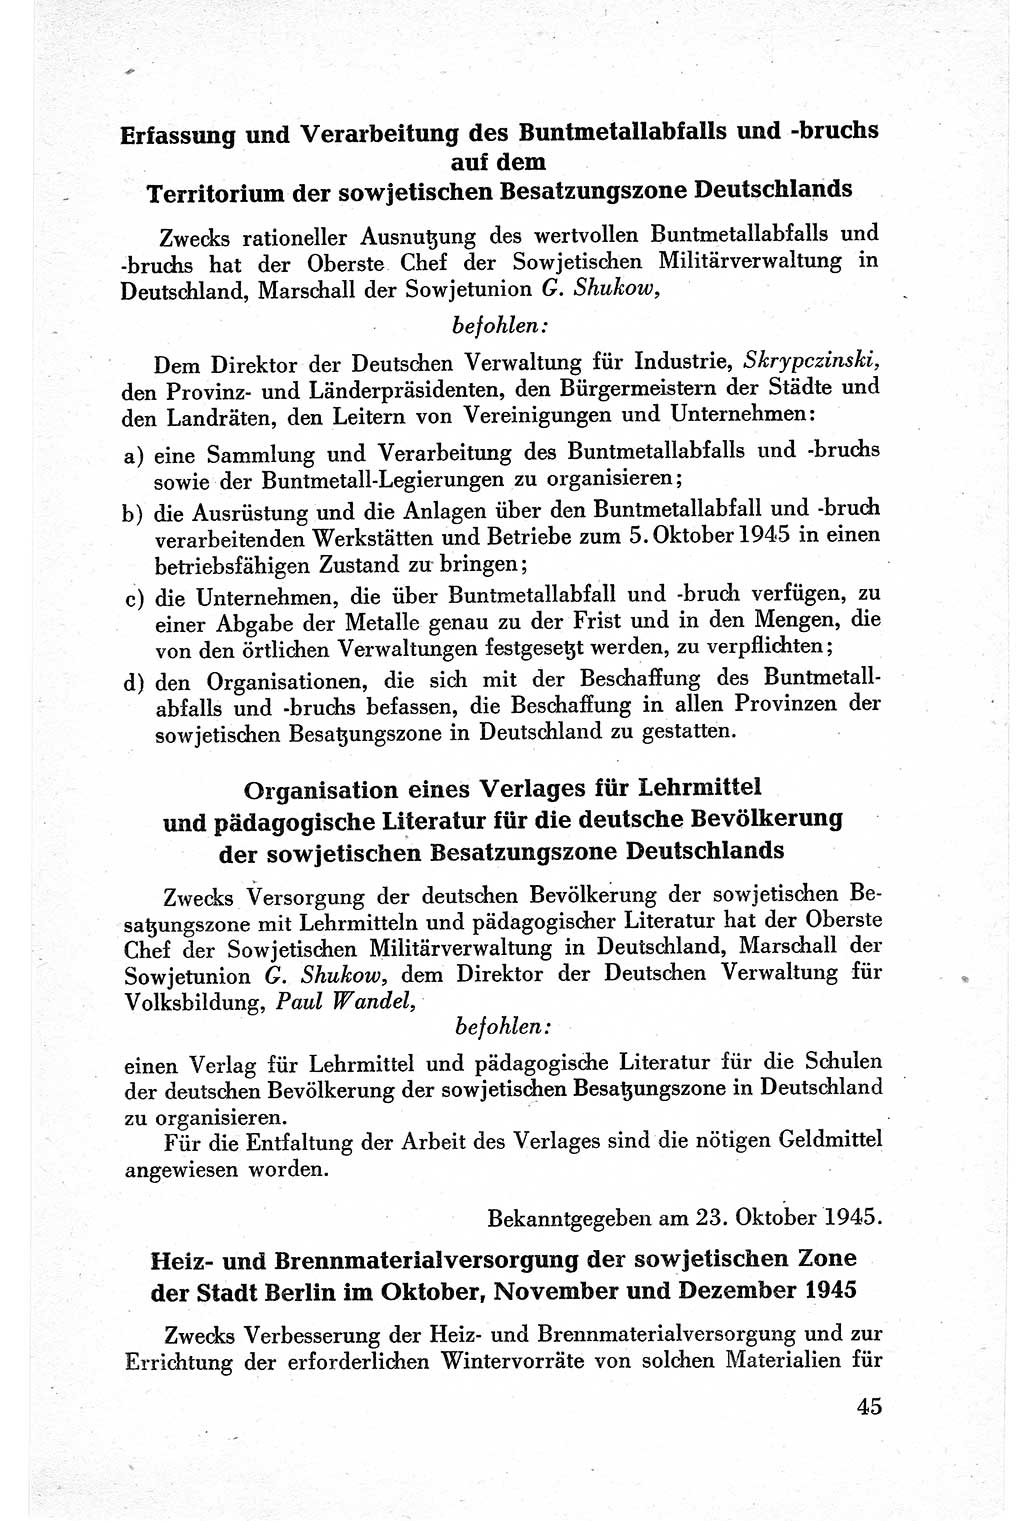 Befehle des Obersten Chefs der Sowjetischen Miltärverwaltung (SMV) in Deutschland - Aus dem Stab der Sowjetischen Militärverwaltung in Deutschland 1945, Seite 45 (Bef. SMV Dtl. 1945, S. 45)